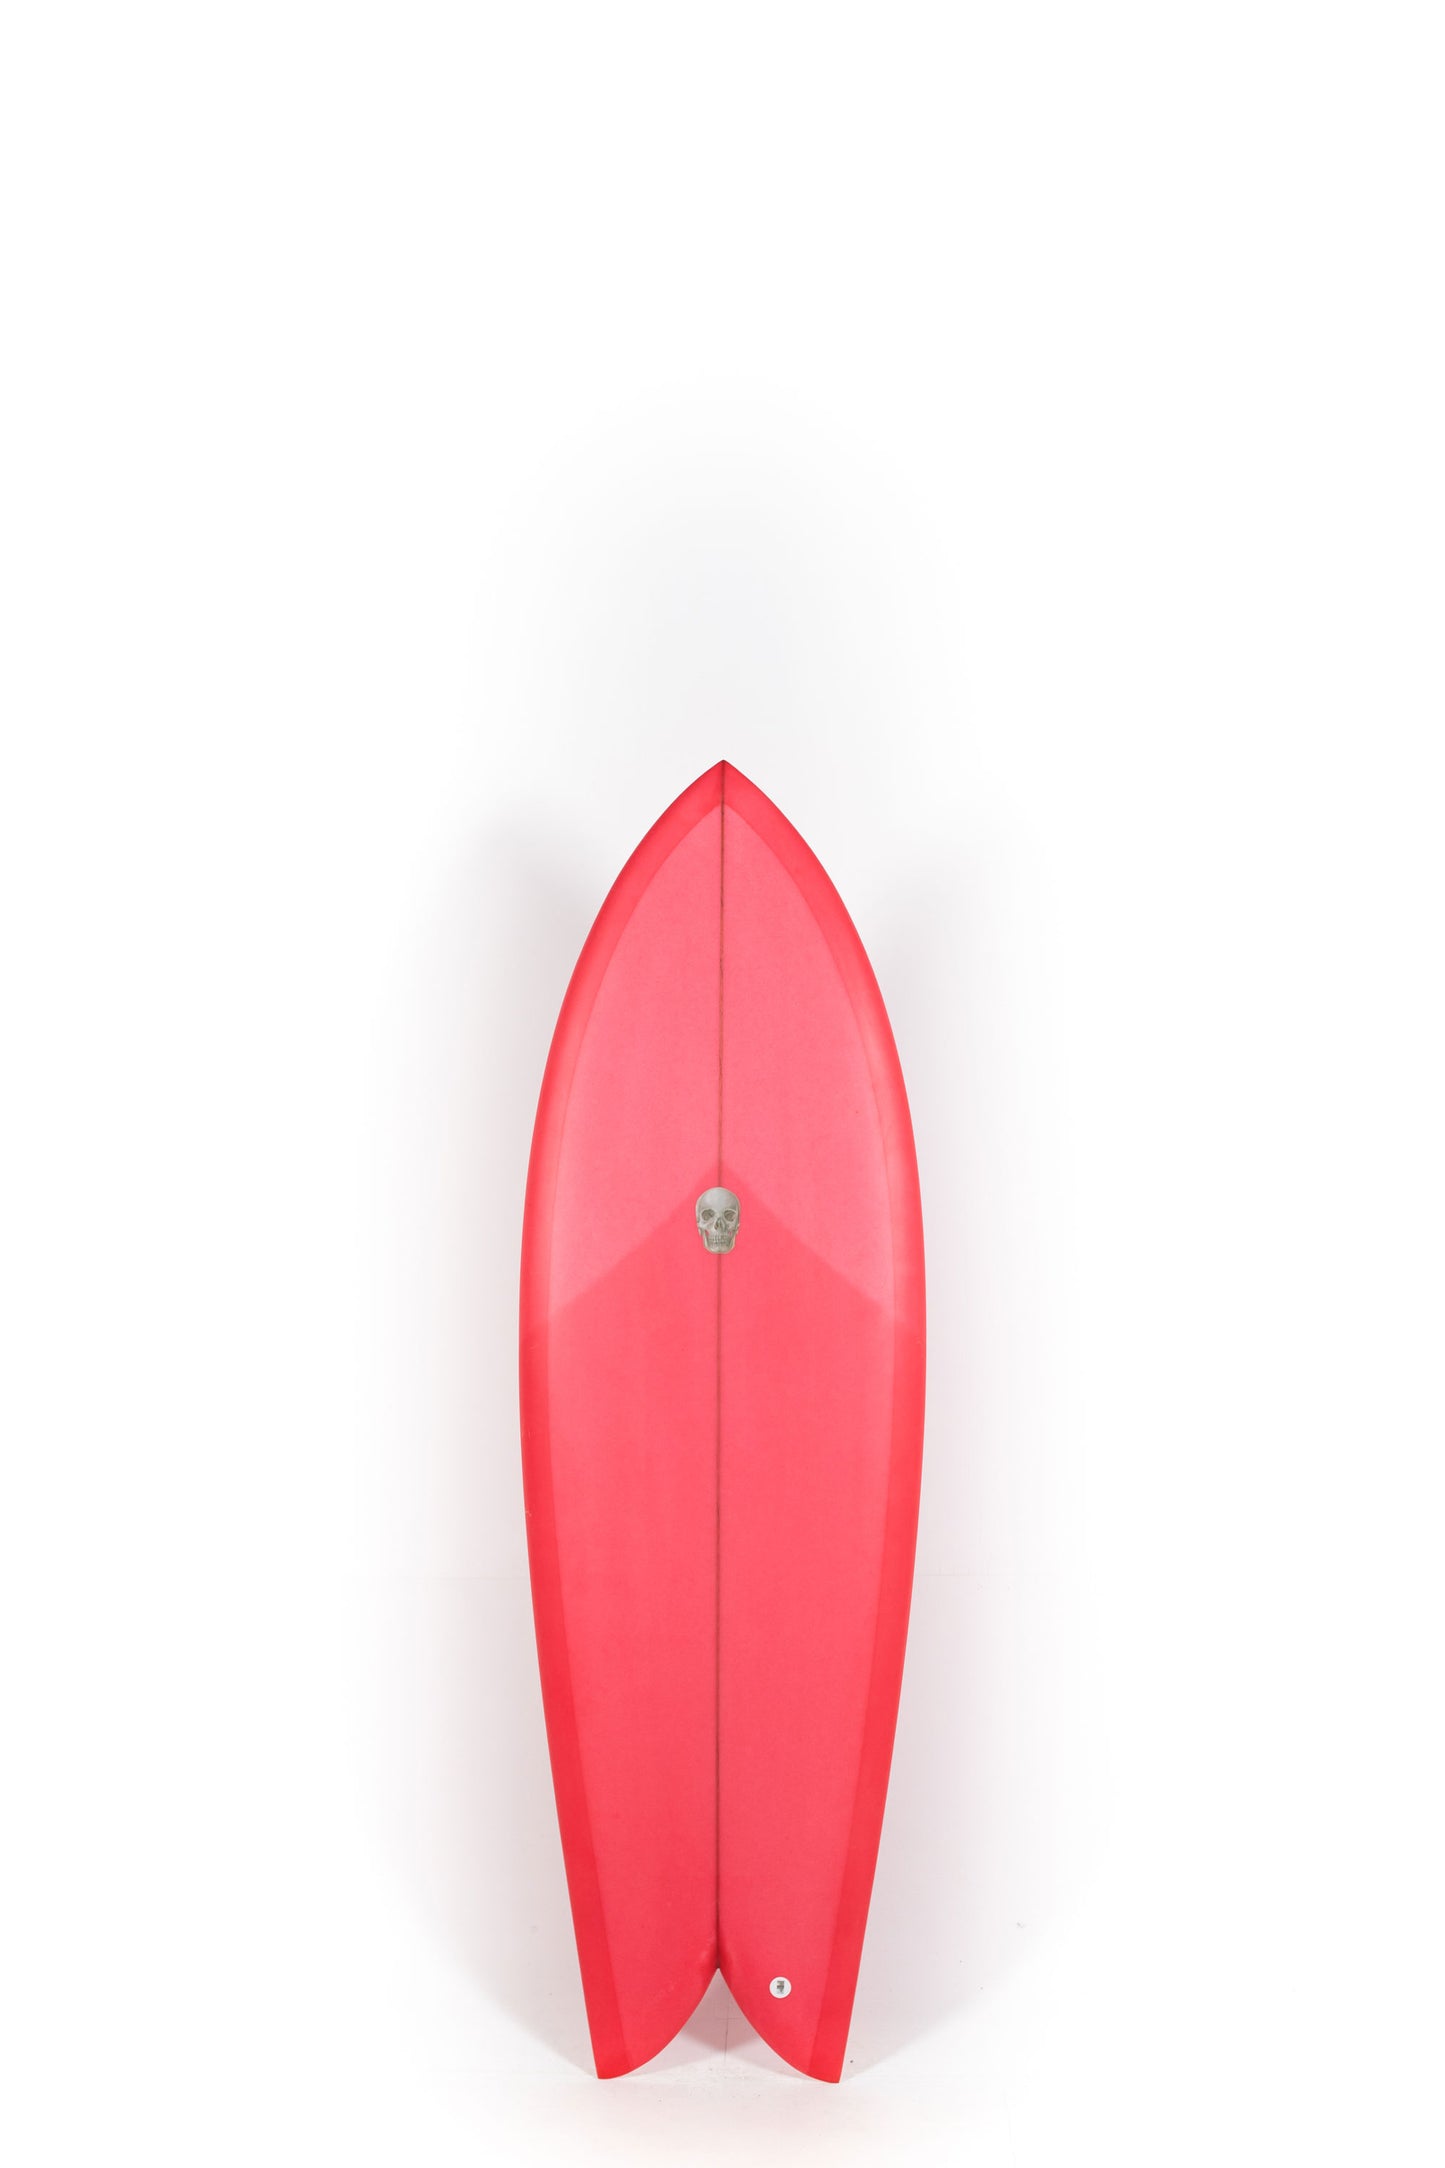 Pukas Surf Shop - Christenson Surfboards - CHRIS FISH - 5'8" x 21 x 2 1/2 - CX05009